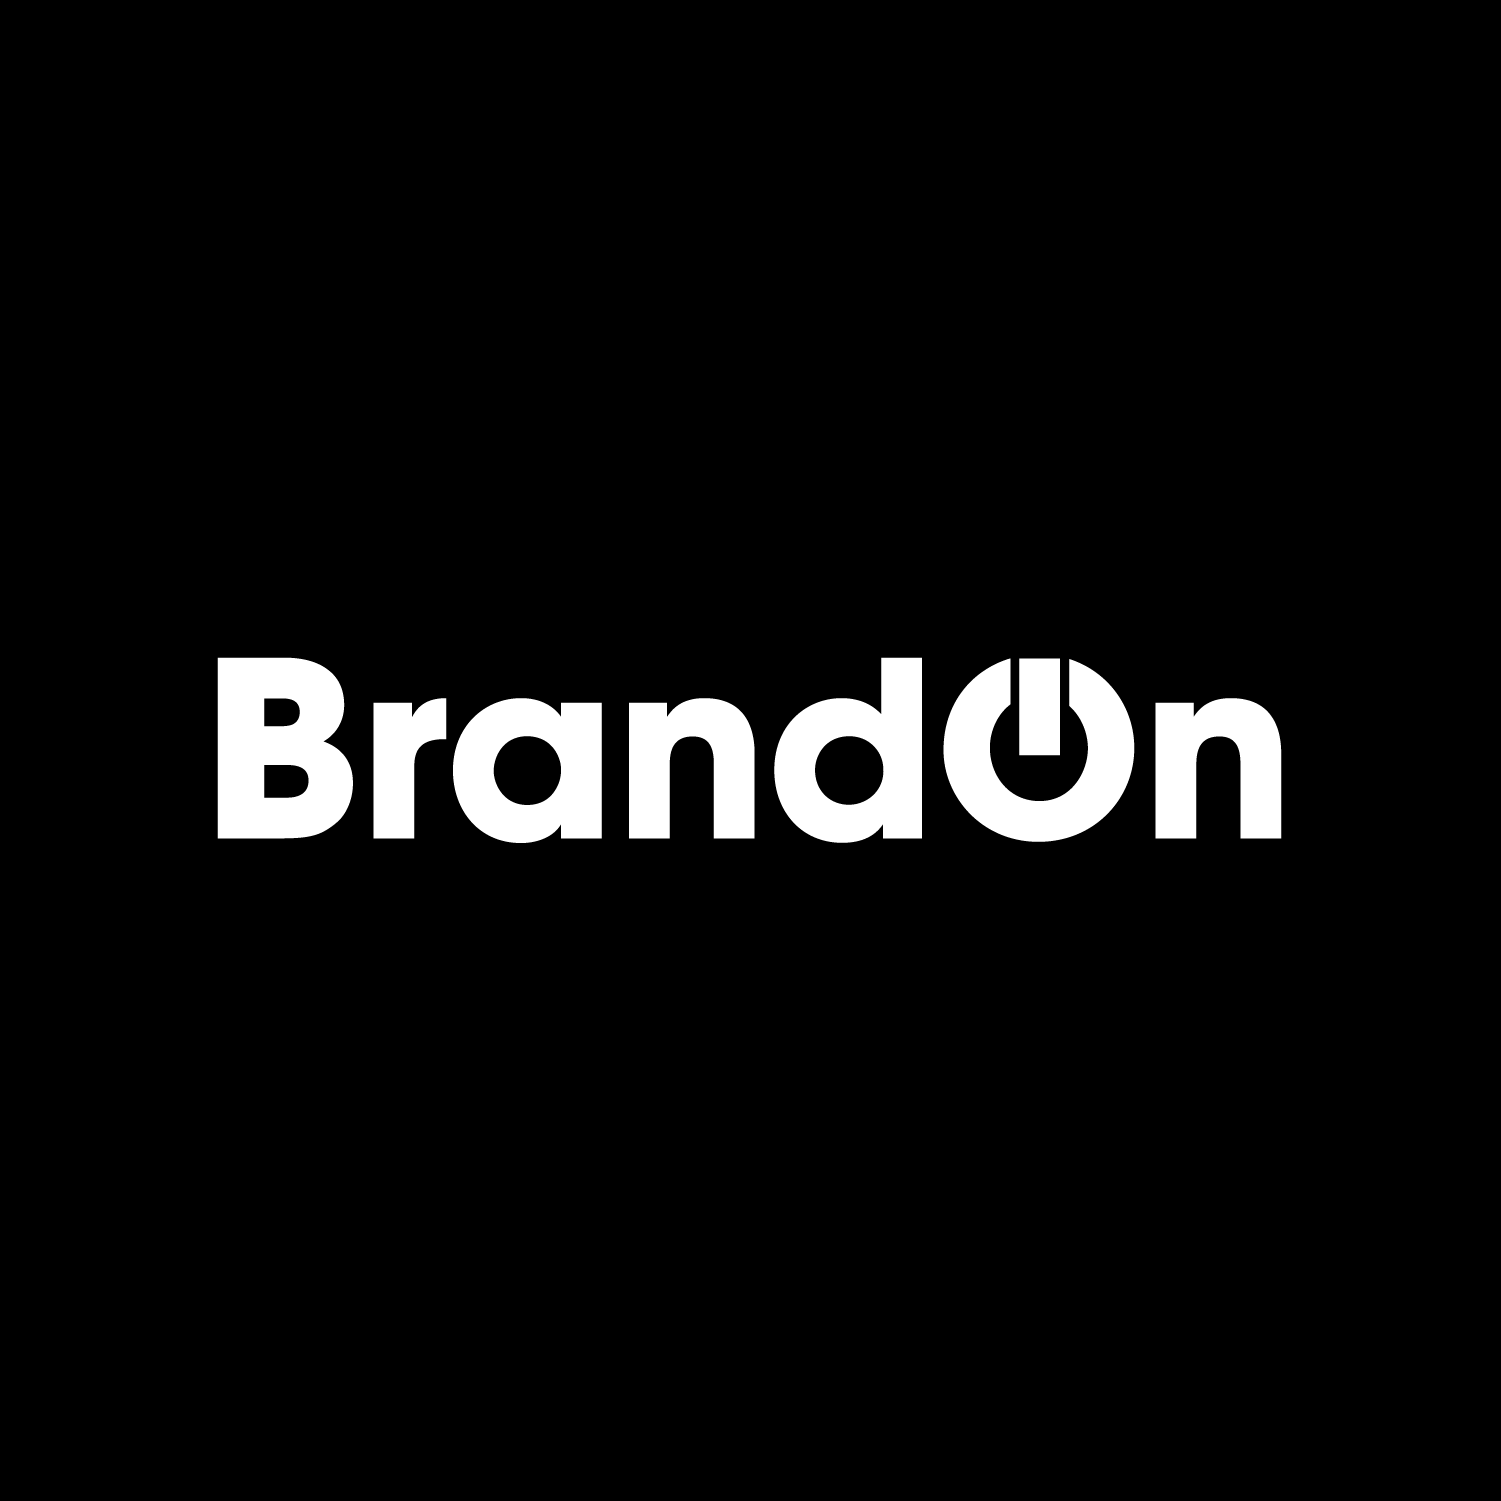 Brandon